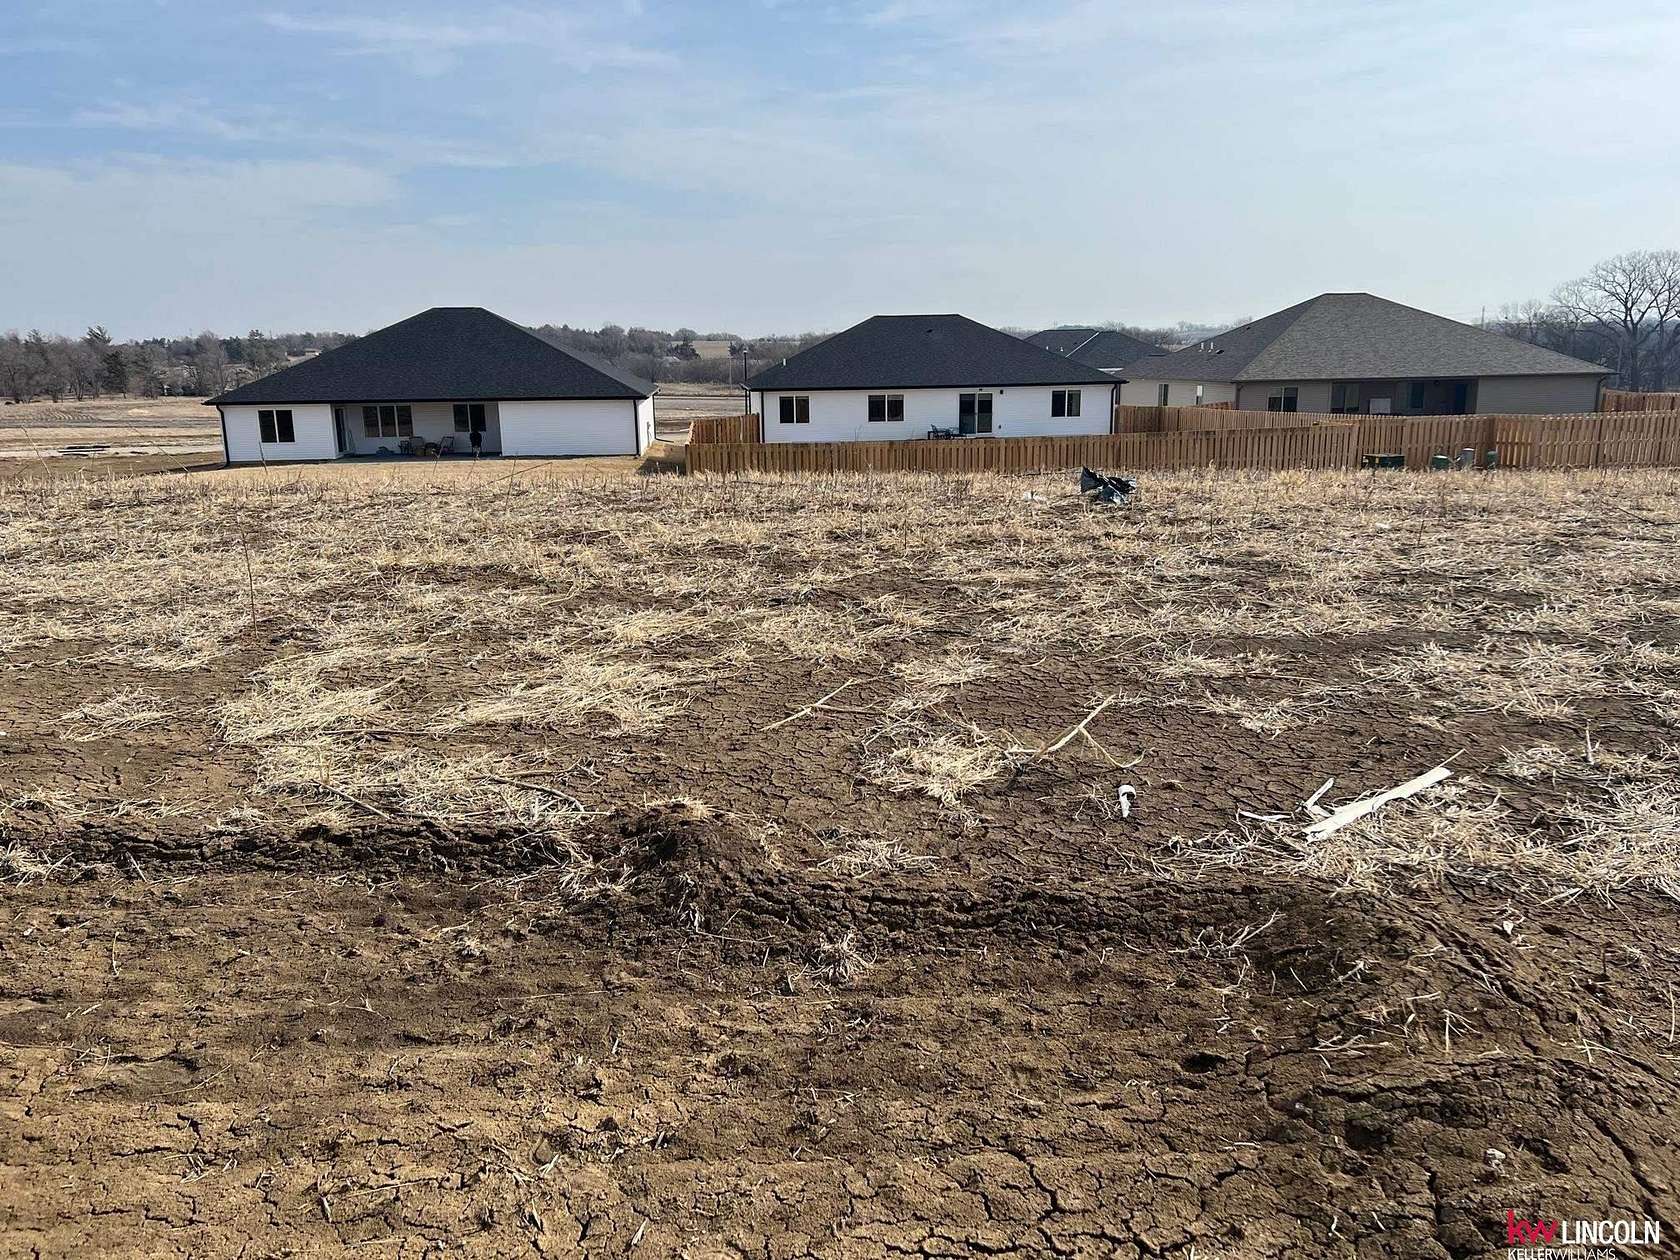 0.25 Acres of Residential Land for Sale in Lincoln, Nebraska